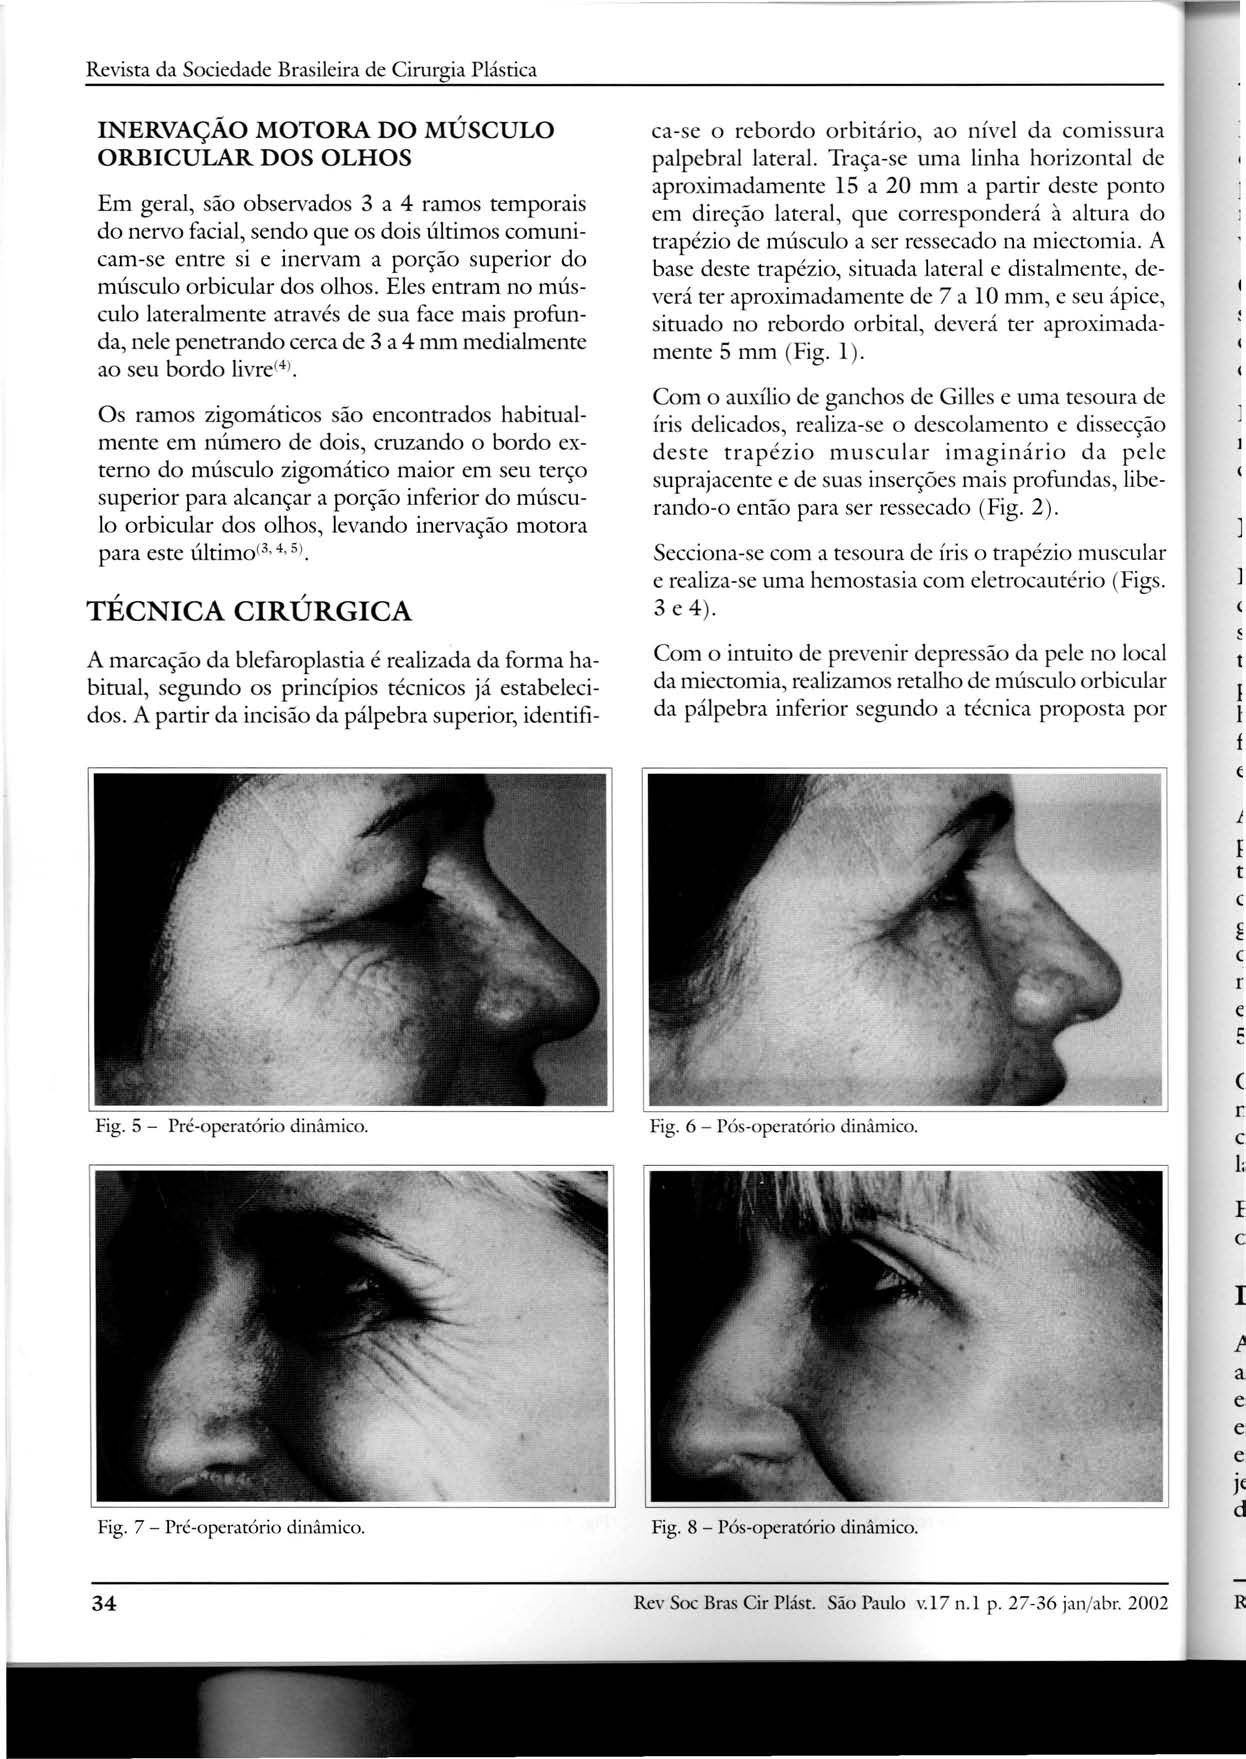 Revista da Sociedade Brasileira de Cirurgia Plástica INERVAÇÃO MOTORA DO MÚSCULO ORBICULAR DOS OLHOS Em geral, são observados 3 a 4 ramos temporais do nervo facial, sendo que os dois últimos